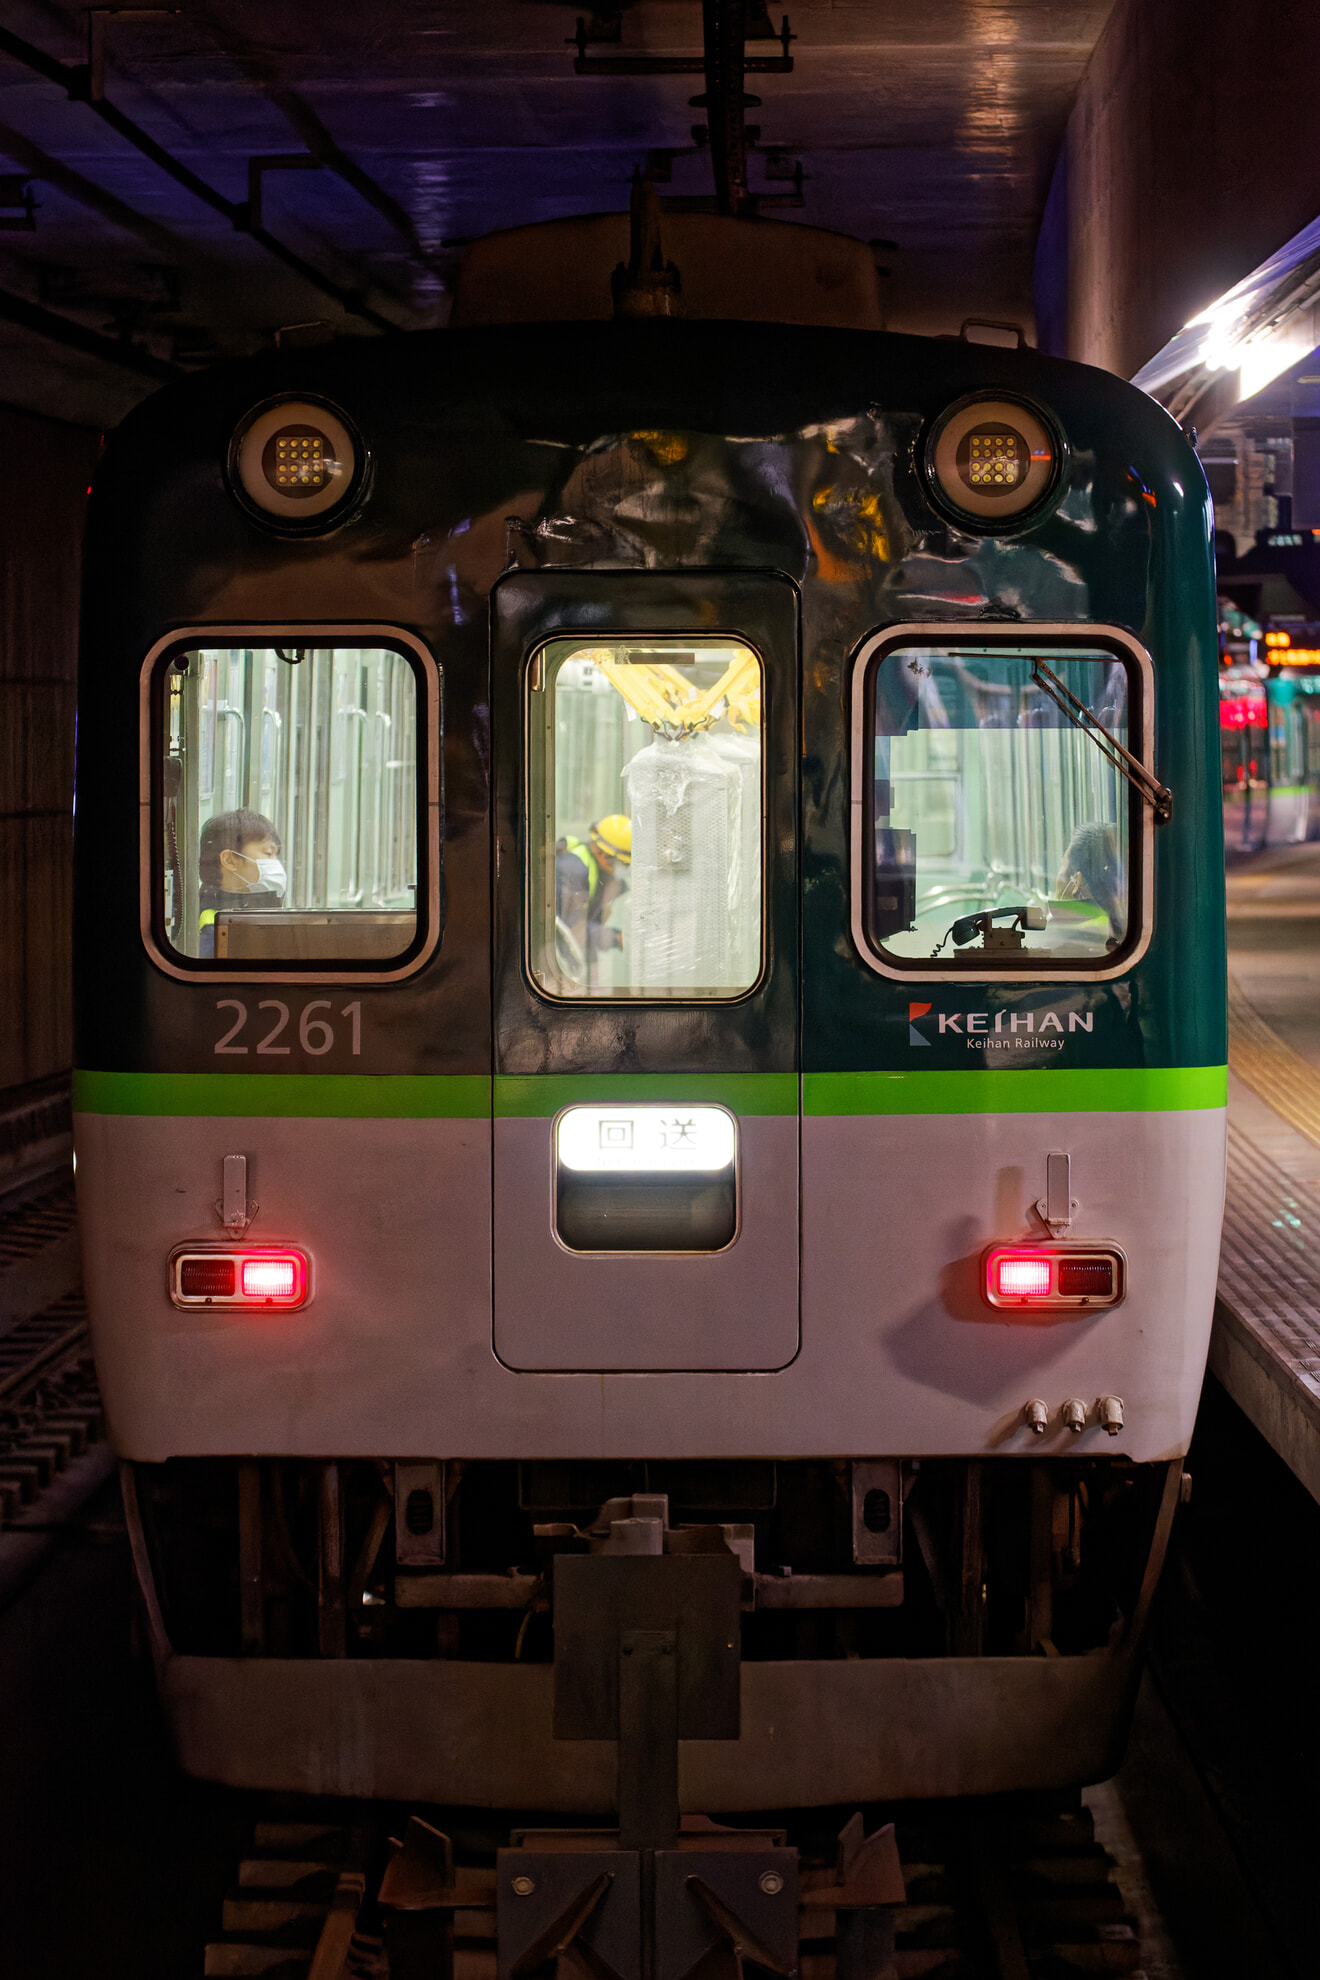 【京阪】2200系2211Fを使用した京橋駅ホームドア輸送列車の拡大写真